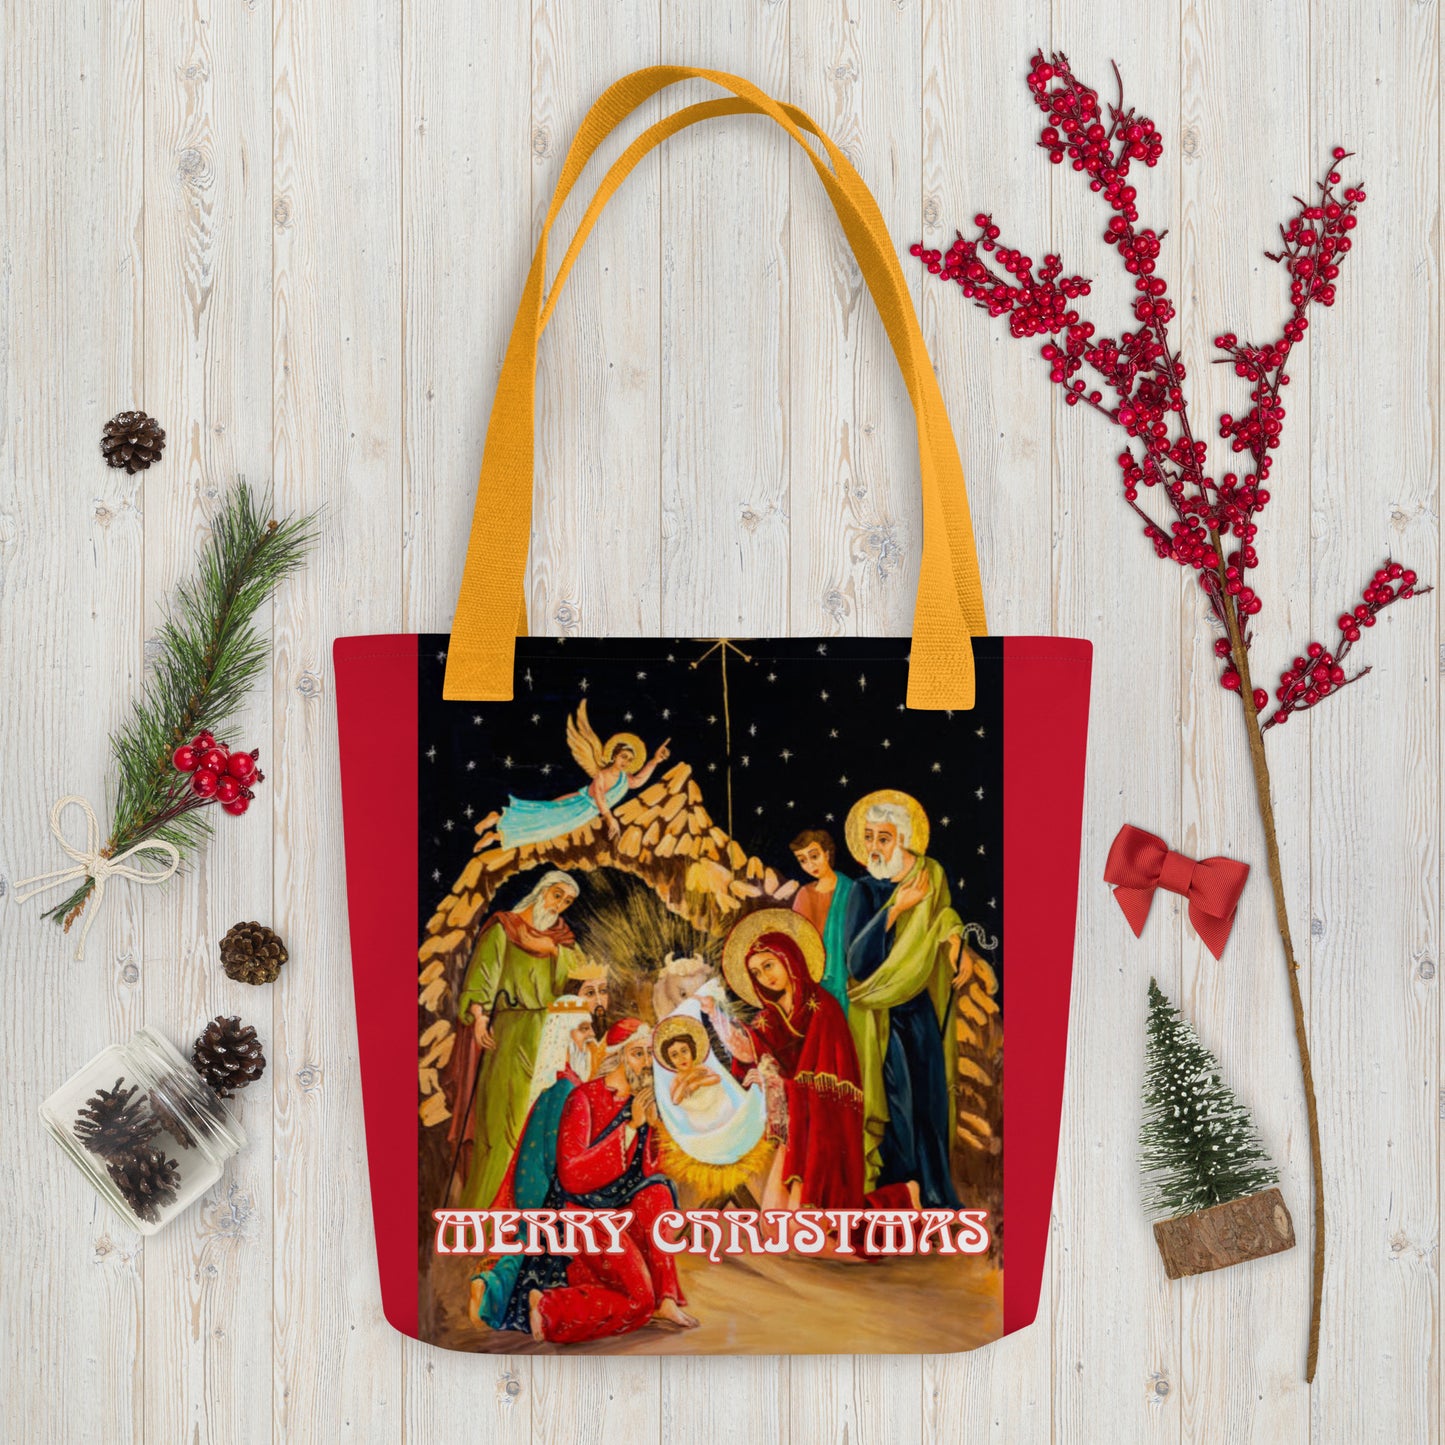 Merry Christmas 954 Tote bag